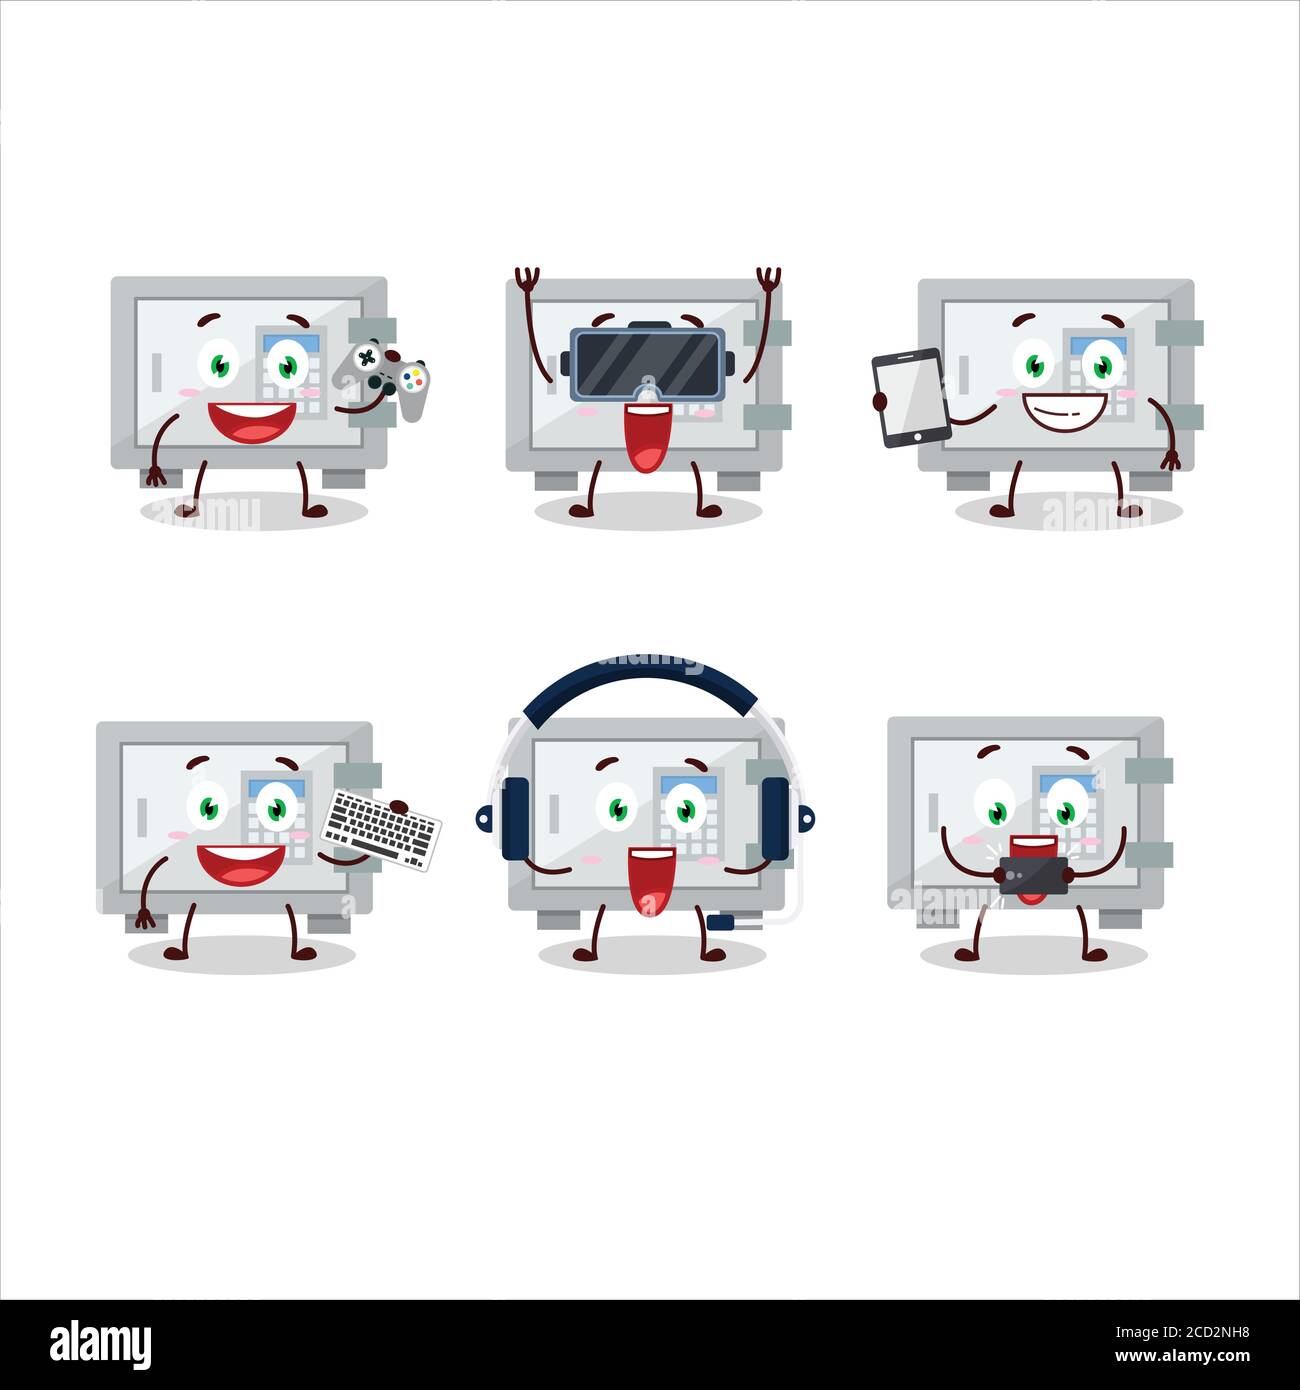 Le personnage de dessin animé de coffre-fort numérique joue à des jeux avec divers émoticônes mignons Illustration de Vecteur